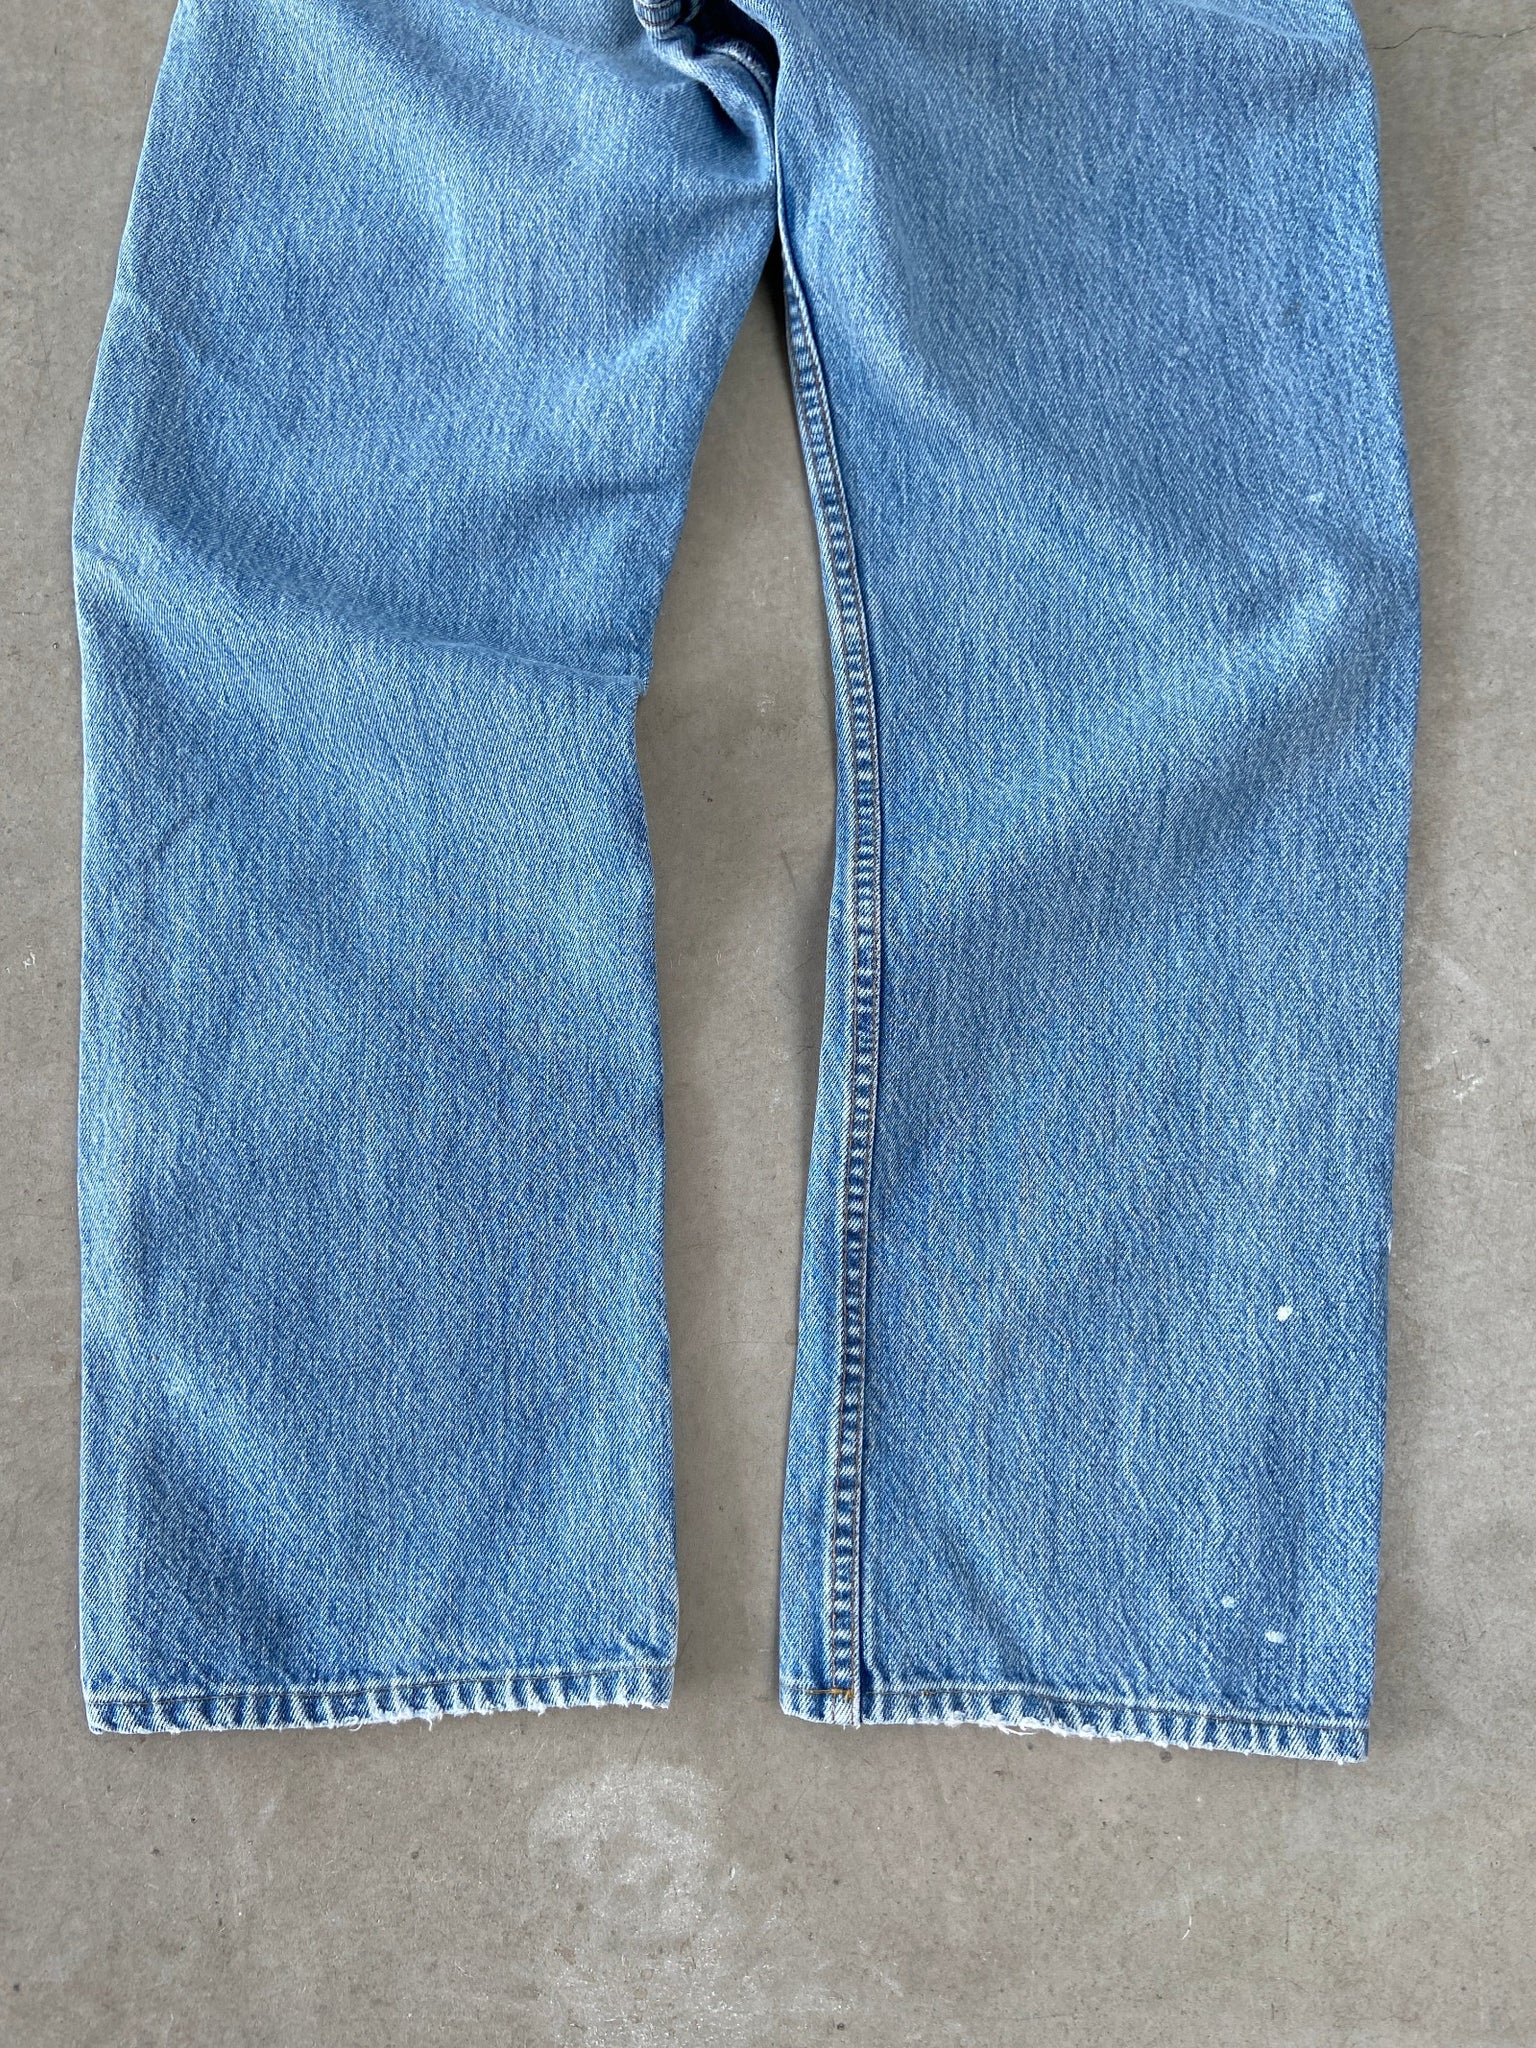 1991 Levi's 542 Jeans - 26 x 29